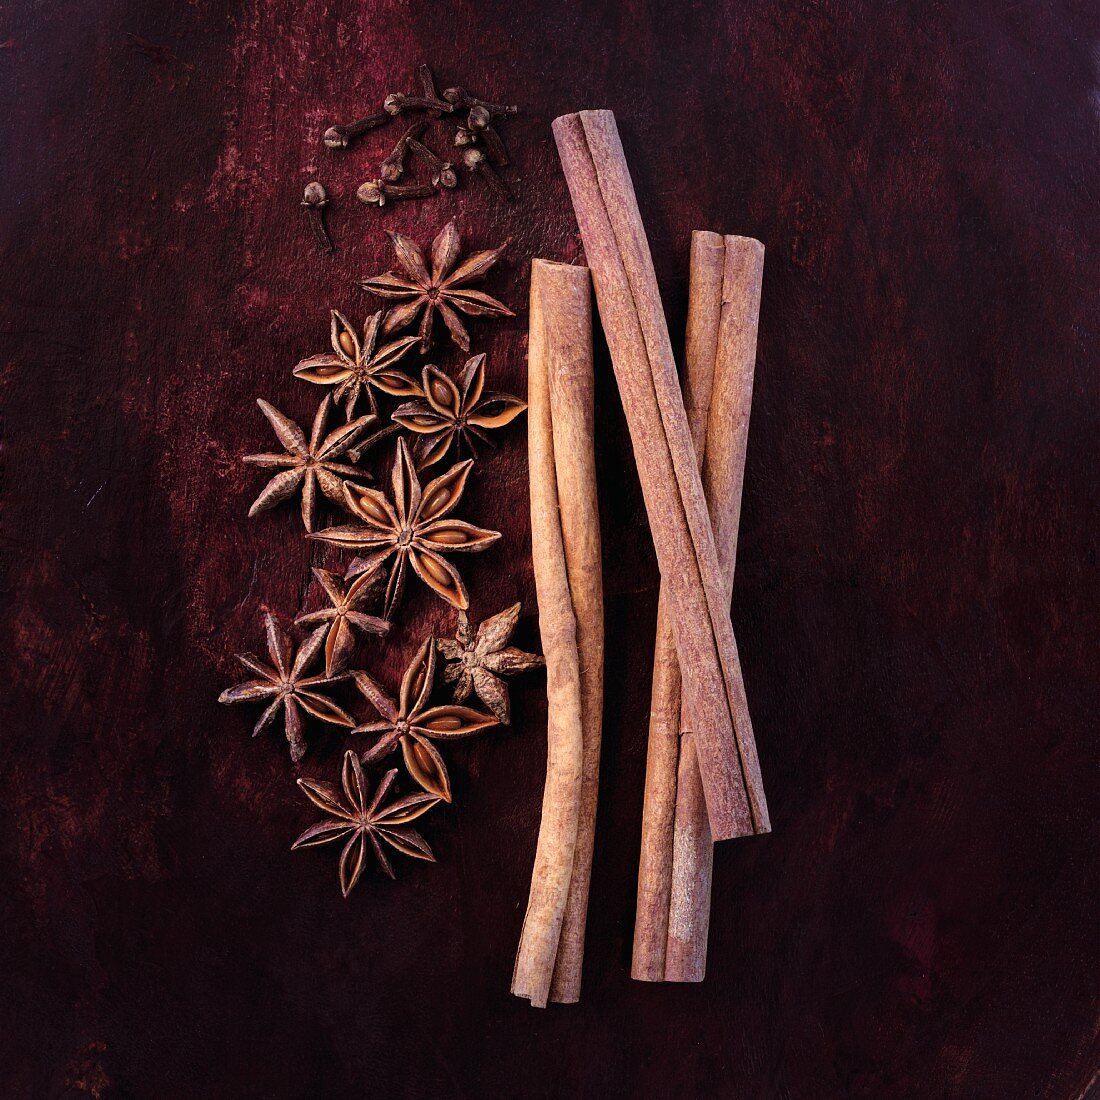 Cinnamon sticks, star anise and cloves